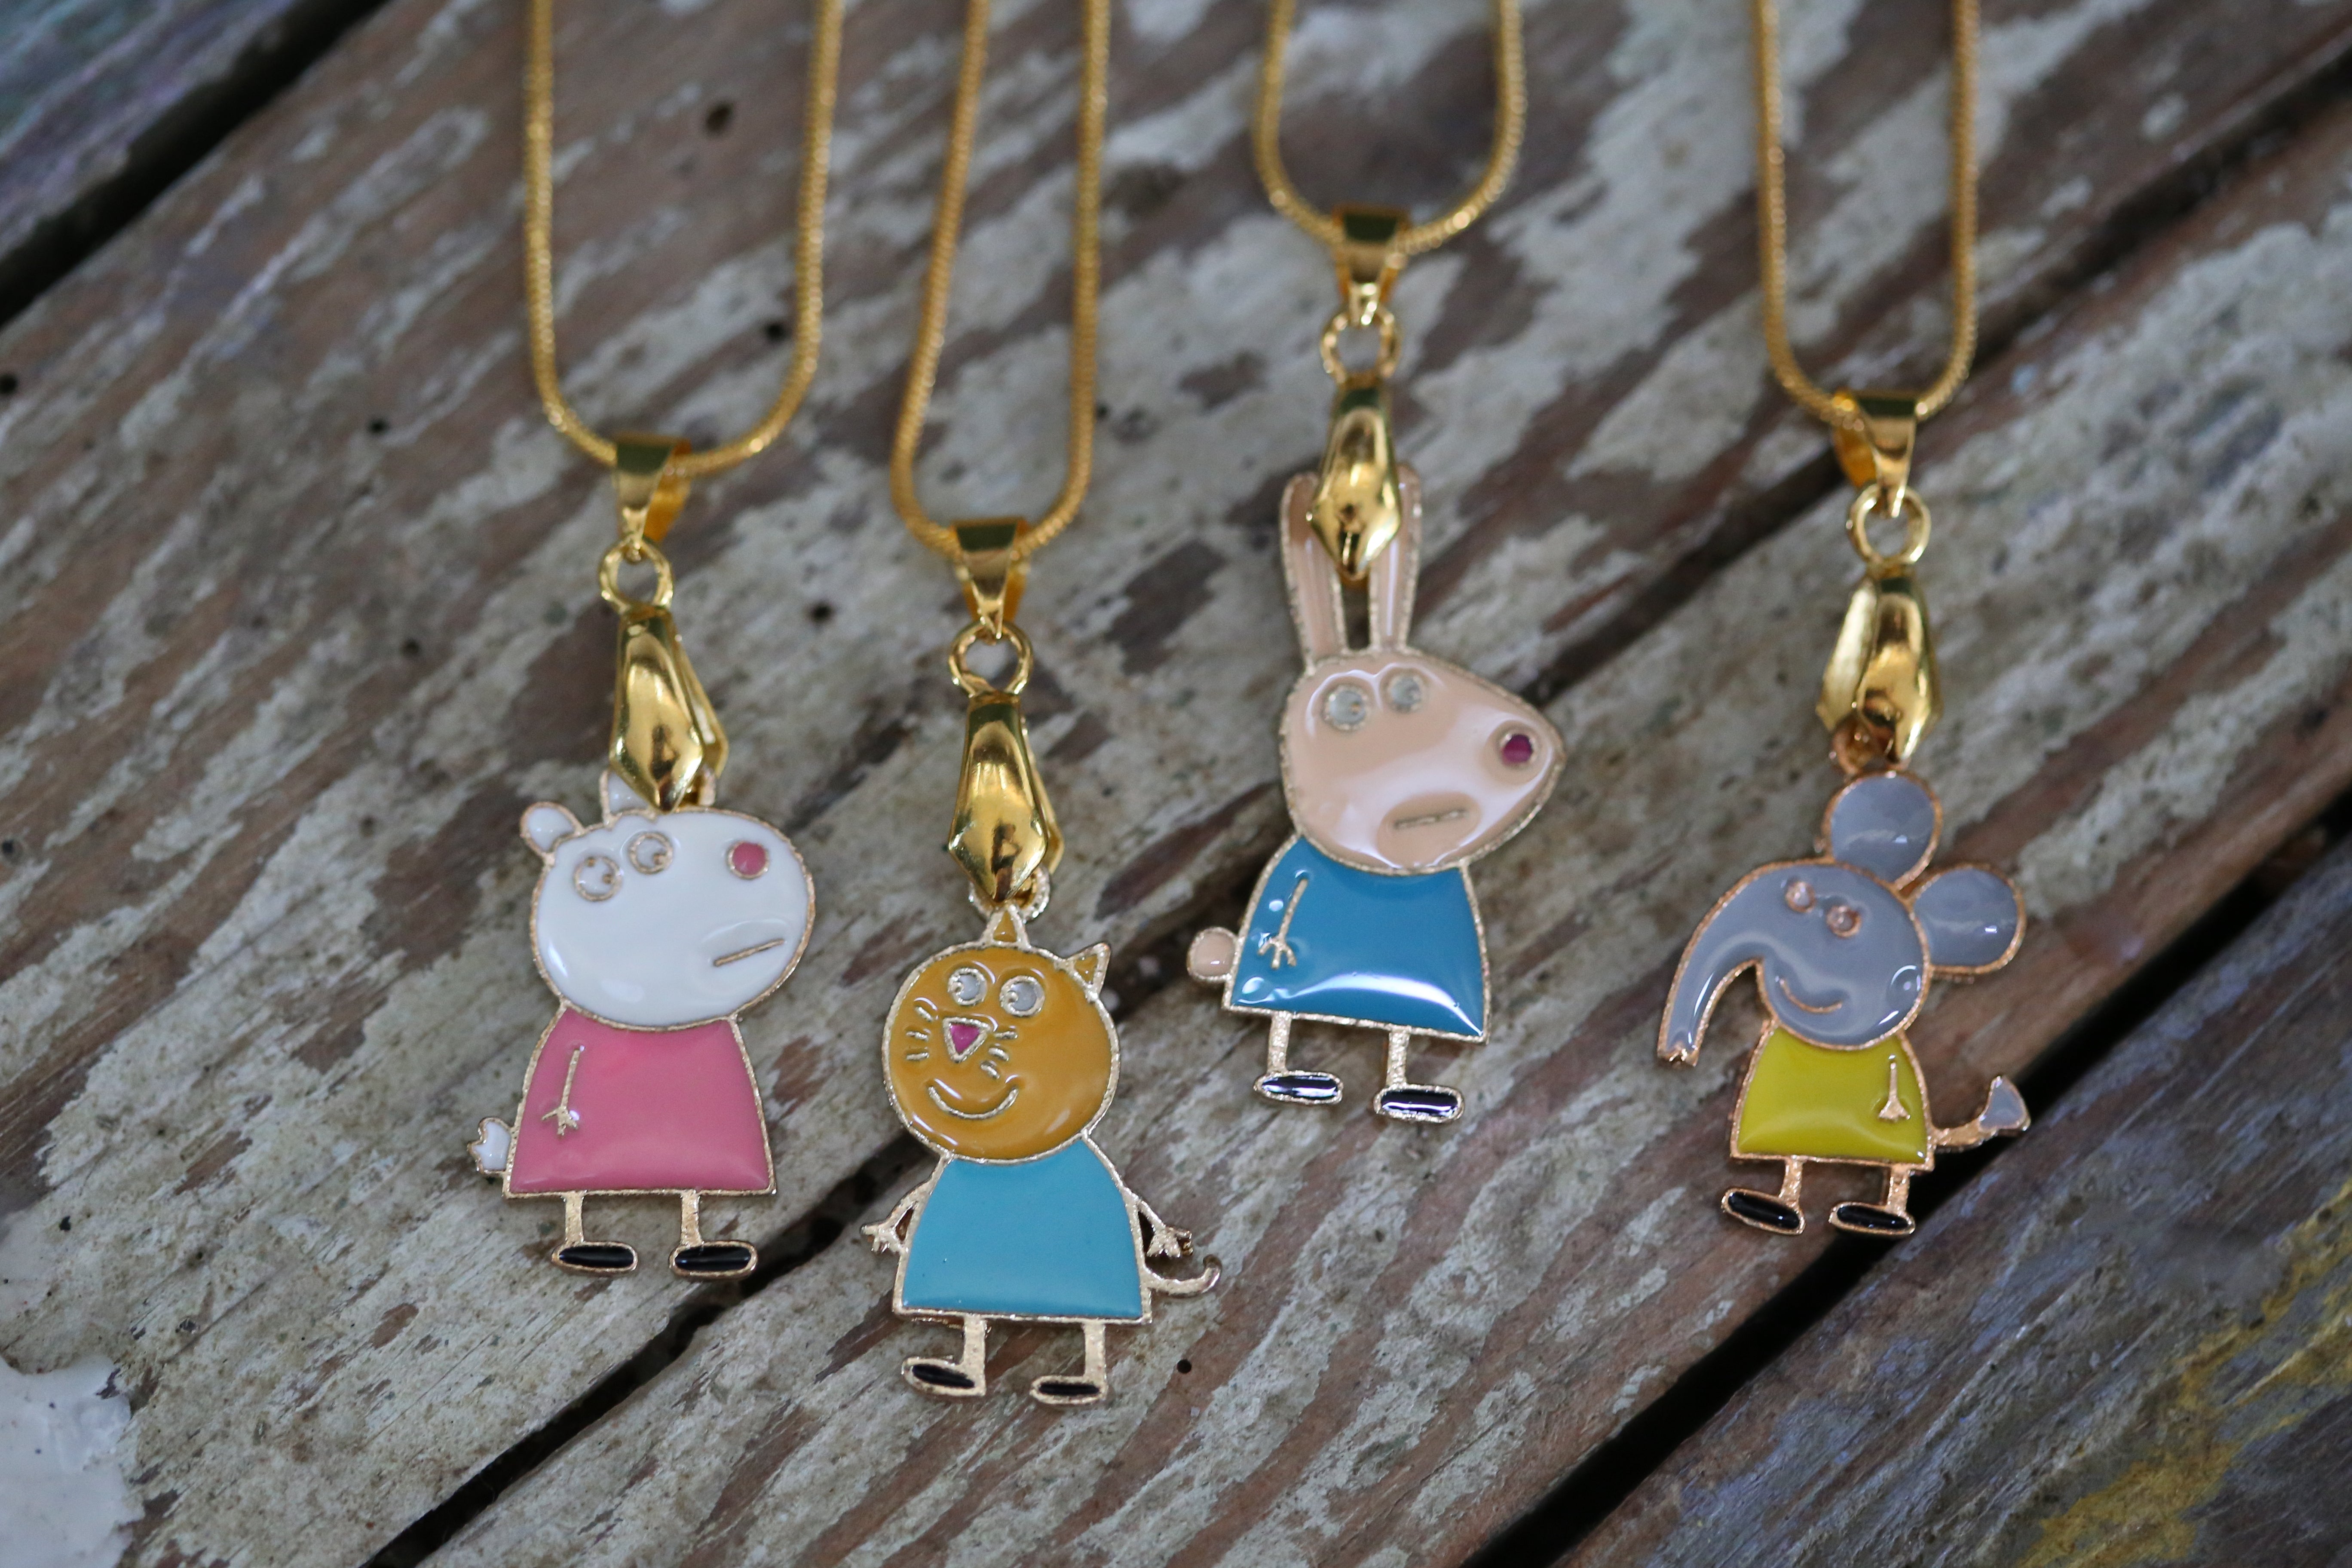 Peppa Pig Friends Pendant Necklaces